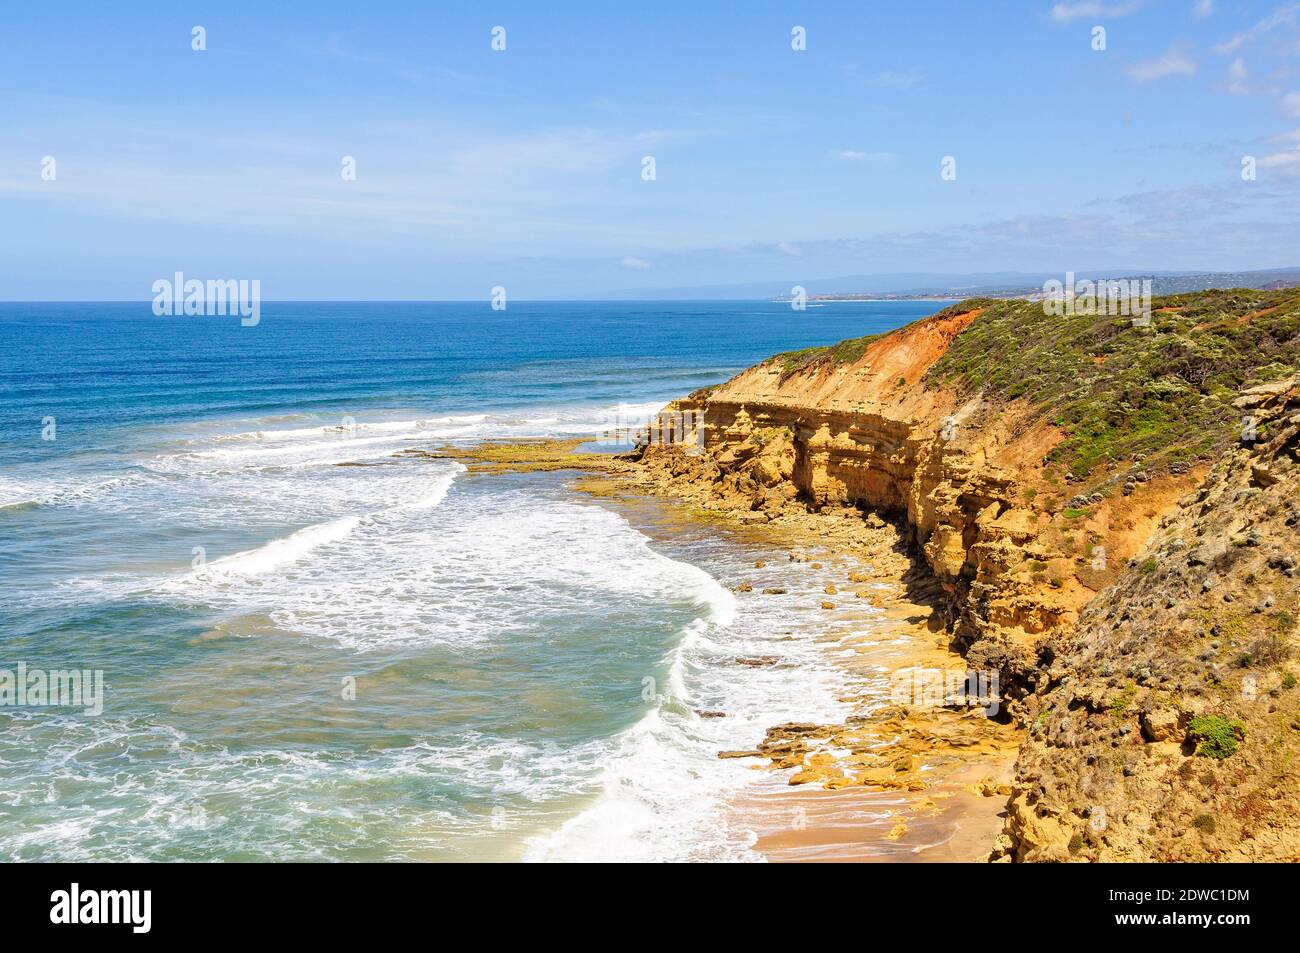 Die Sandsteinfelsen am Point Addis sind ständig von den Wellen des Südlichen Ozeans geformt - Anglesea, Victoria, Australien Stockfoto